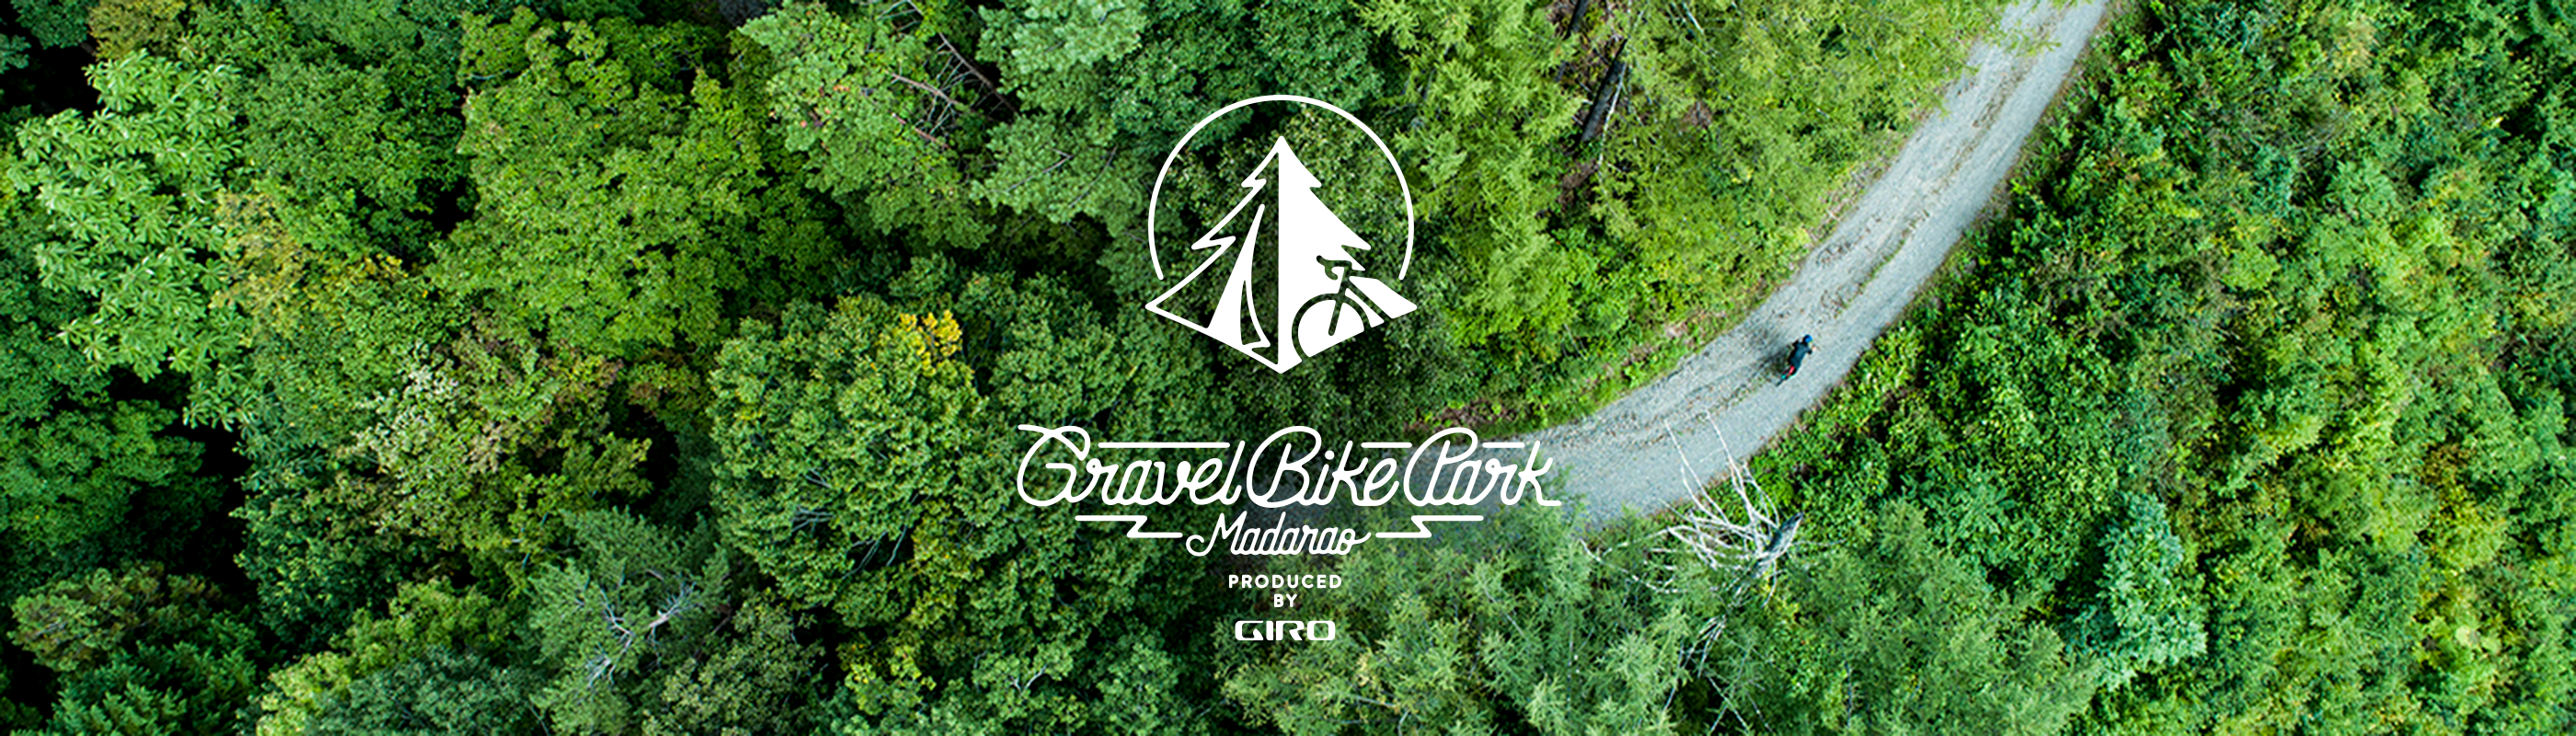 Gravel Bike Park